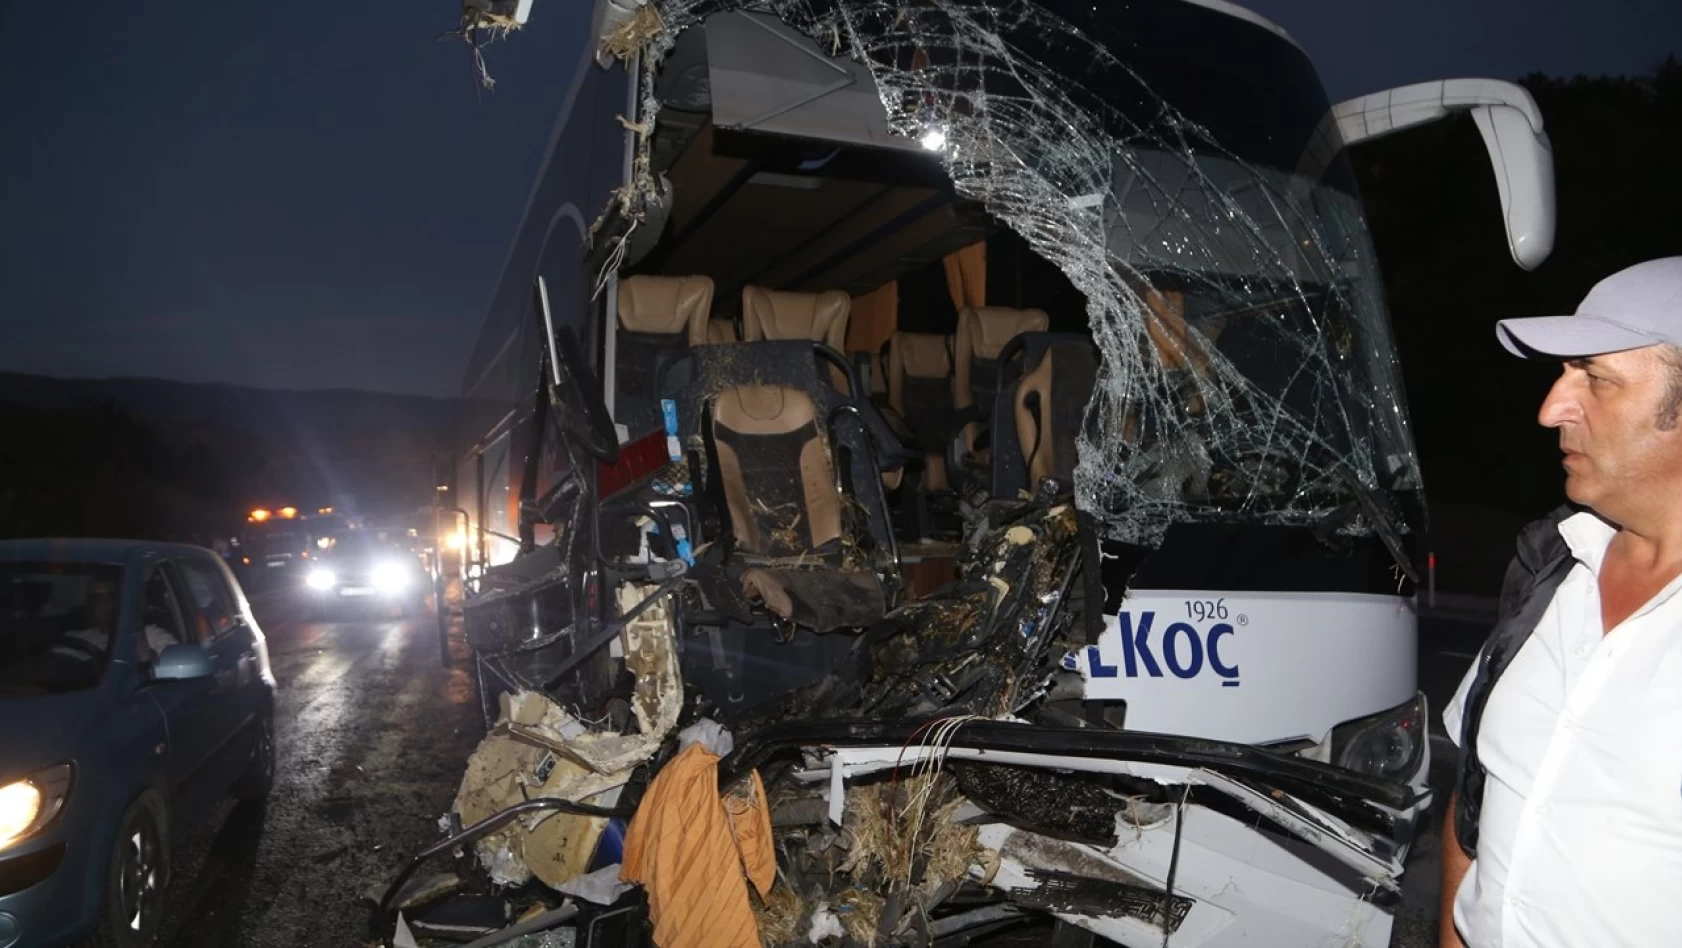 Kastamonu’daki kazada yaralanan otobüs muavini, 6 gün sonra yaşamını yitirdi